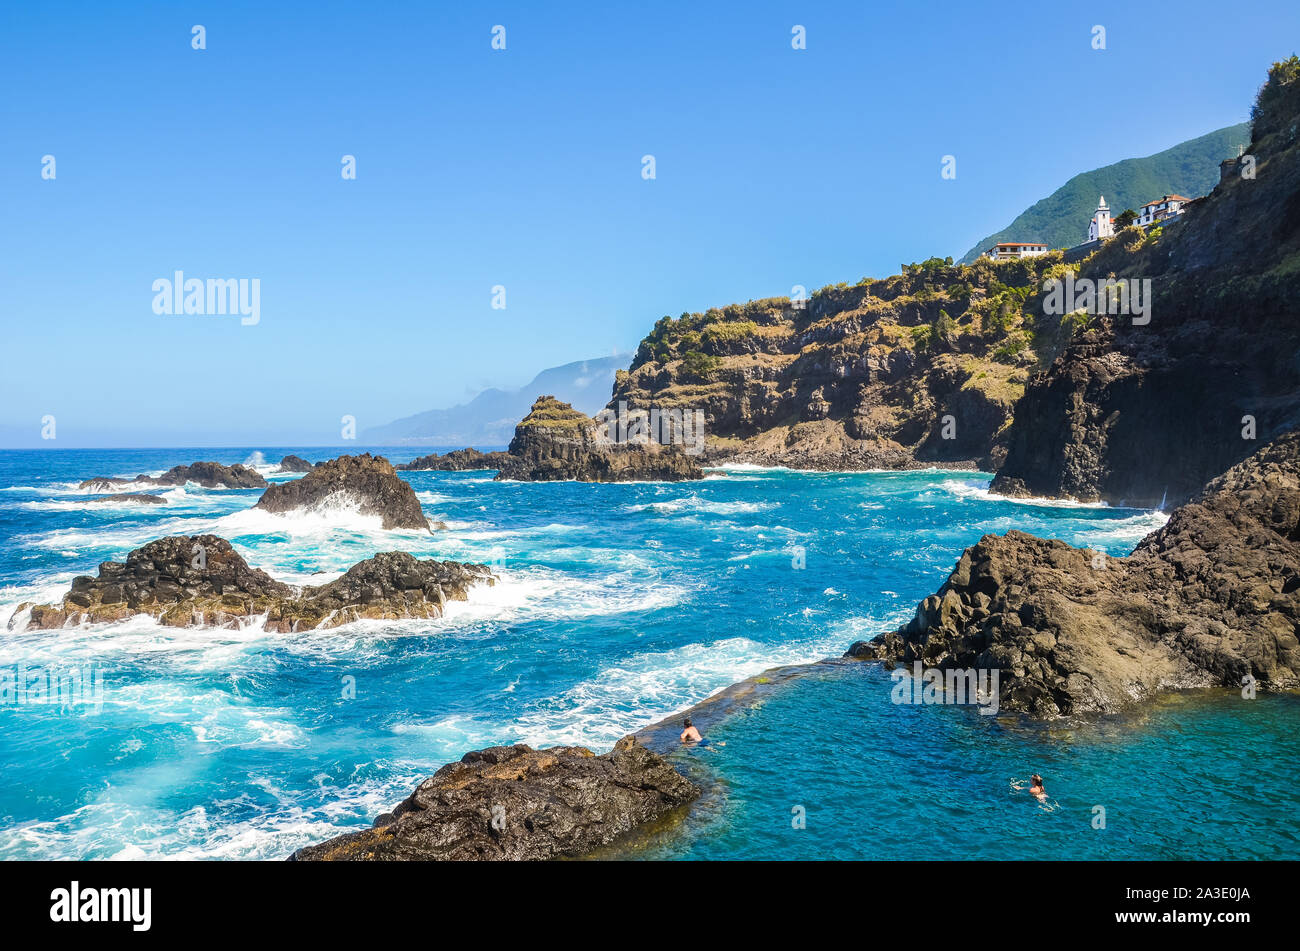 Seixal, Madeira, Portugal - Sep 13, 2019: die Menschen Schwimmen in natürlichen Pools in den Atlantischen Ozean. Pools aus Vulkangestein, in die das Meer natürlich fließt. Touristische Attraktion. Stockfoto